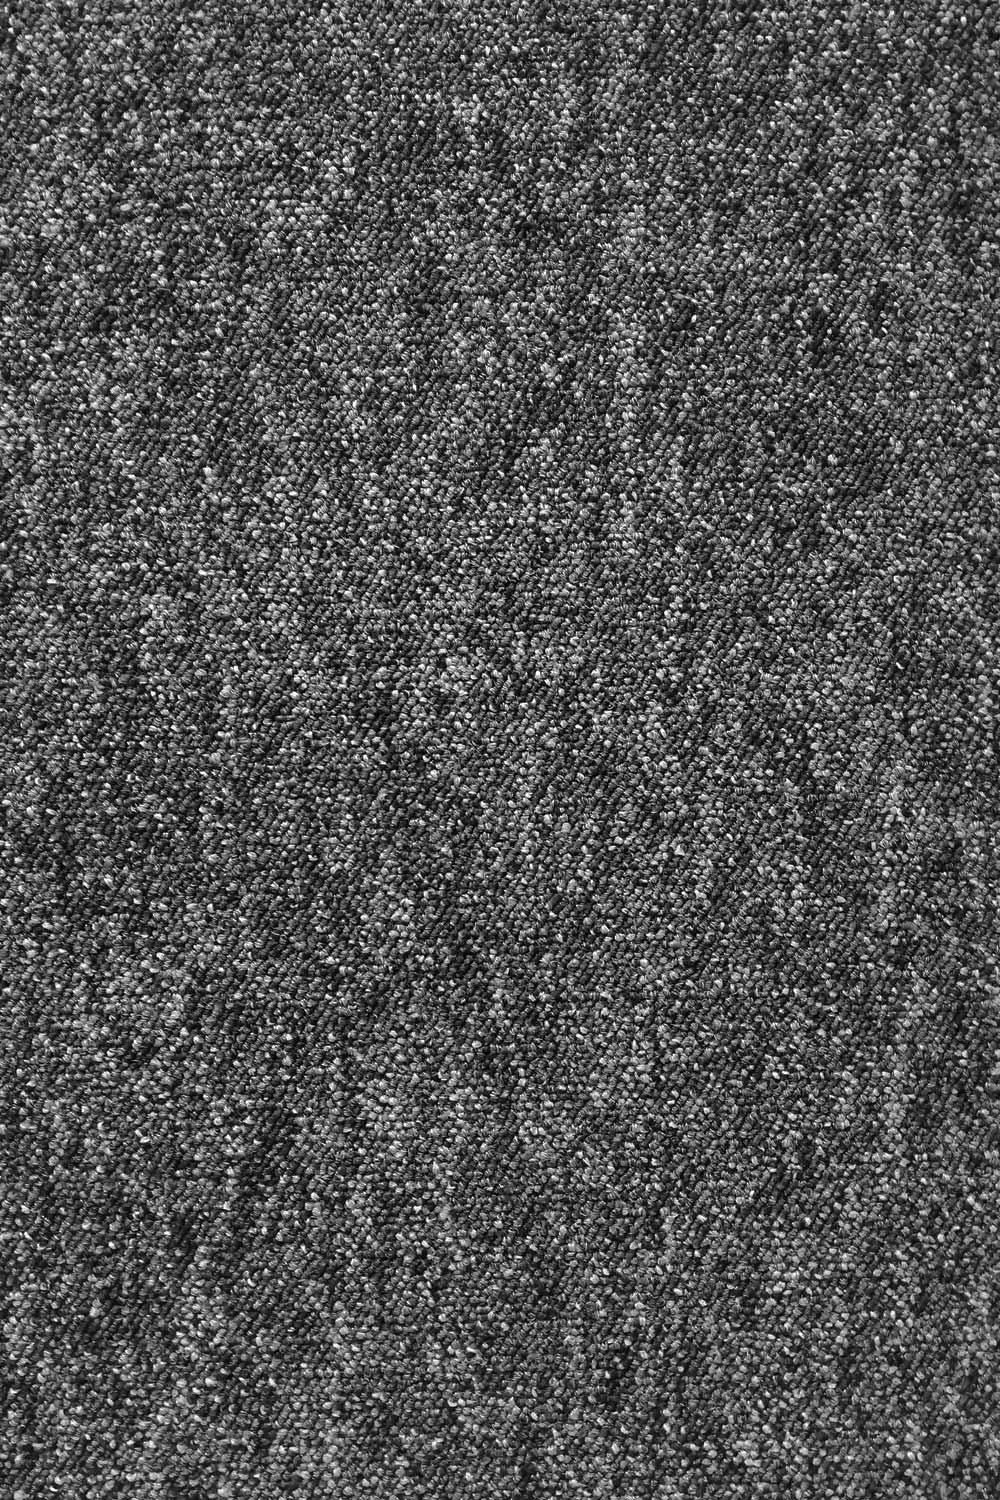 Metrážny koberec Extreme 77 - Zvyšok 234x400 cm